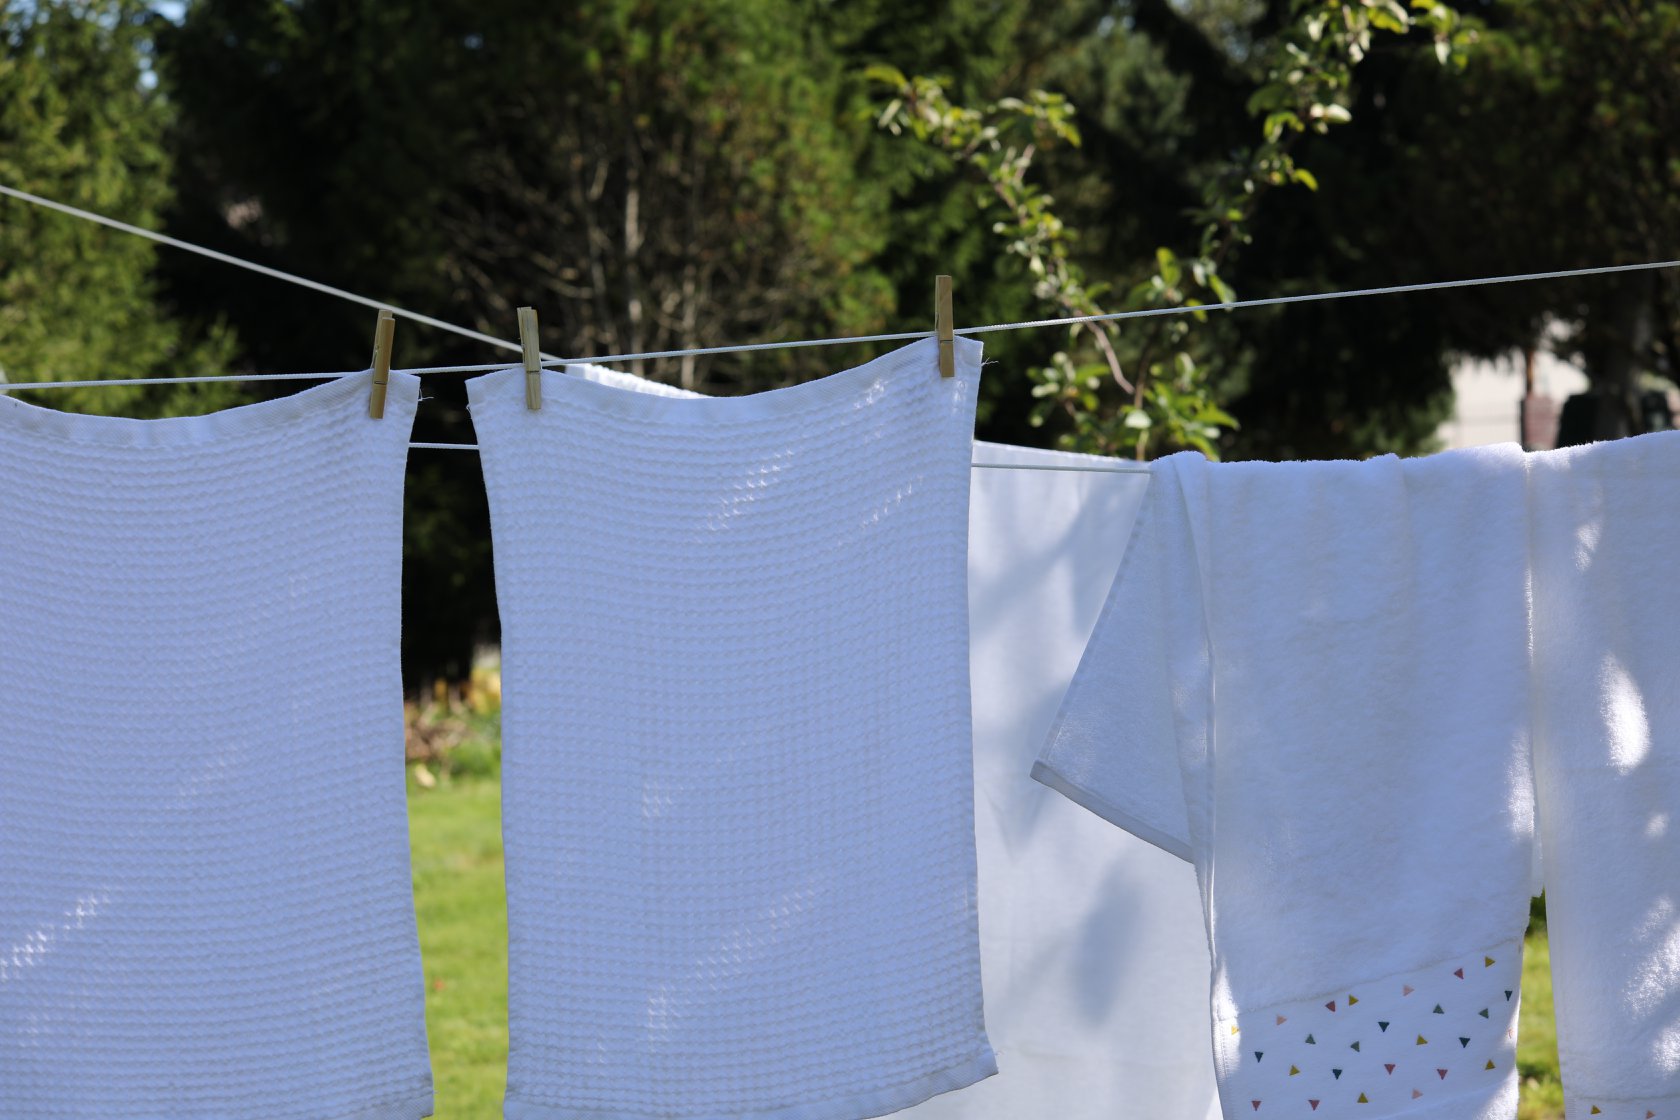 Ką daryti, kad balti skalbiniai iš tiesų būtų balti?